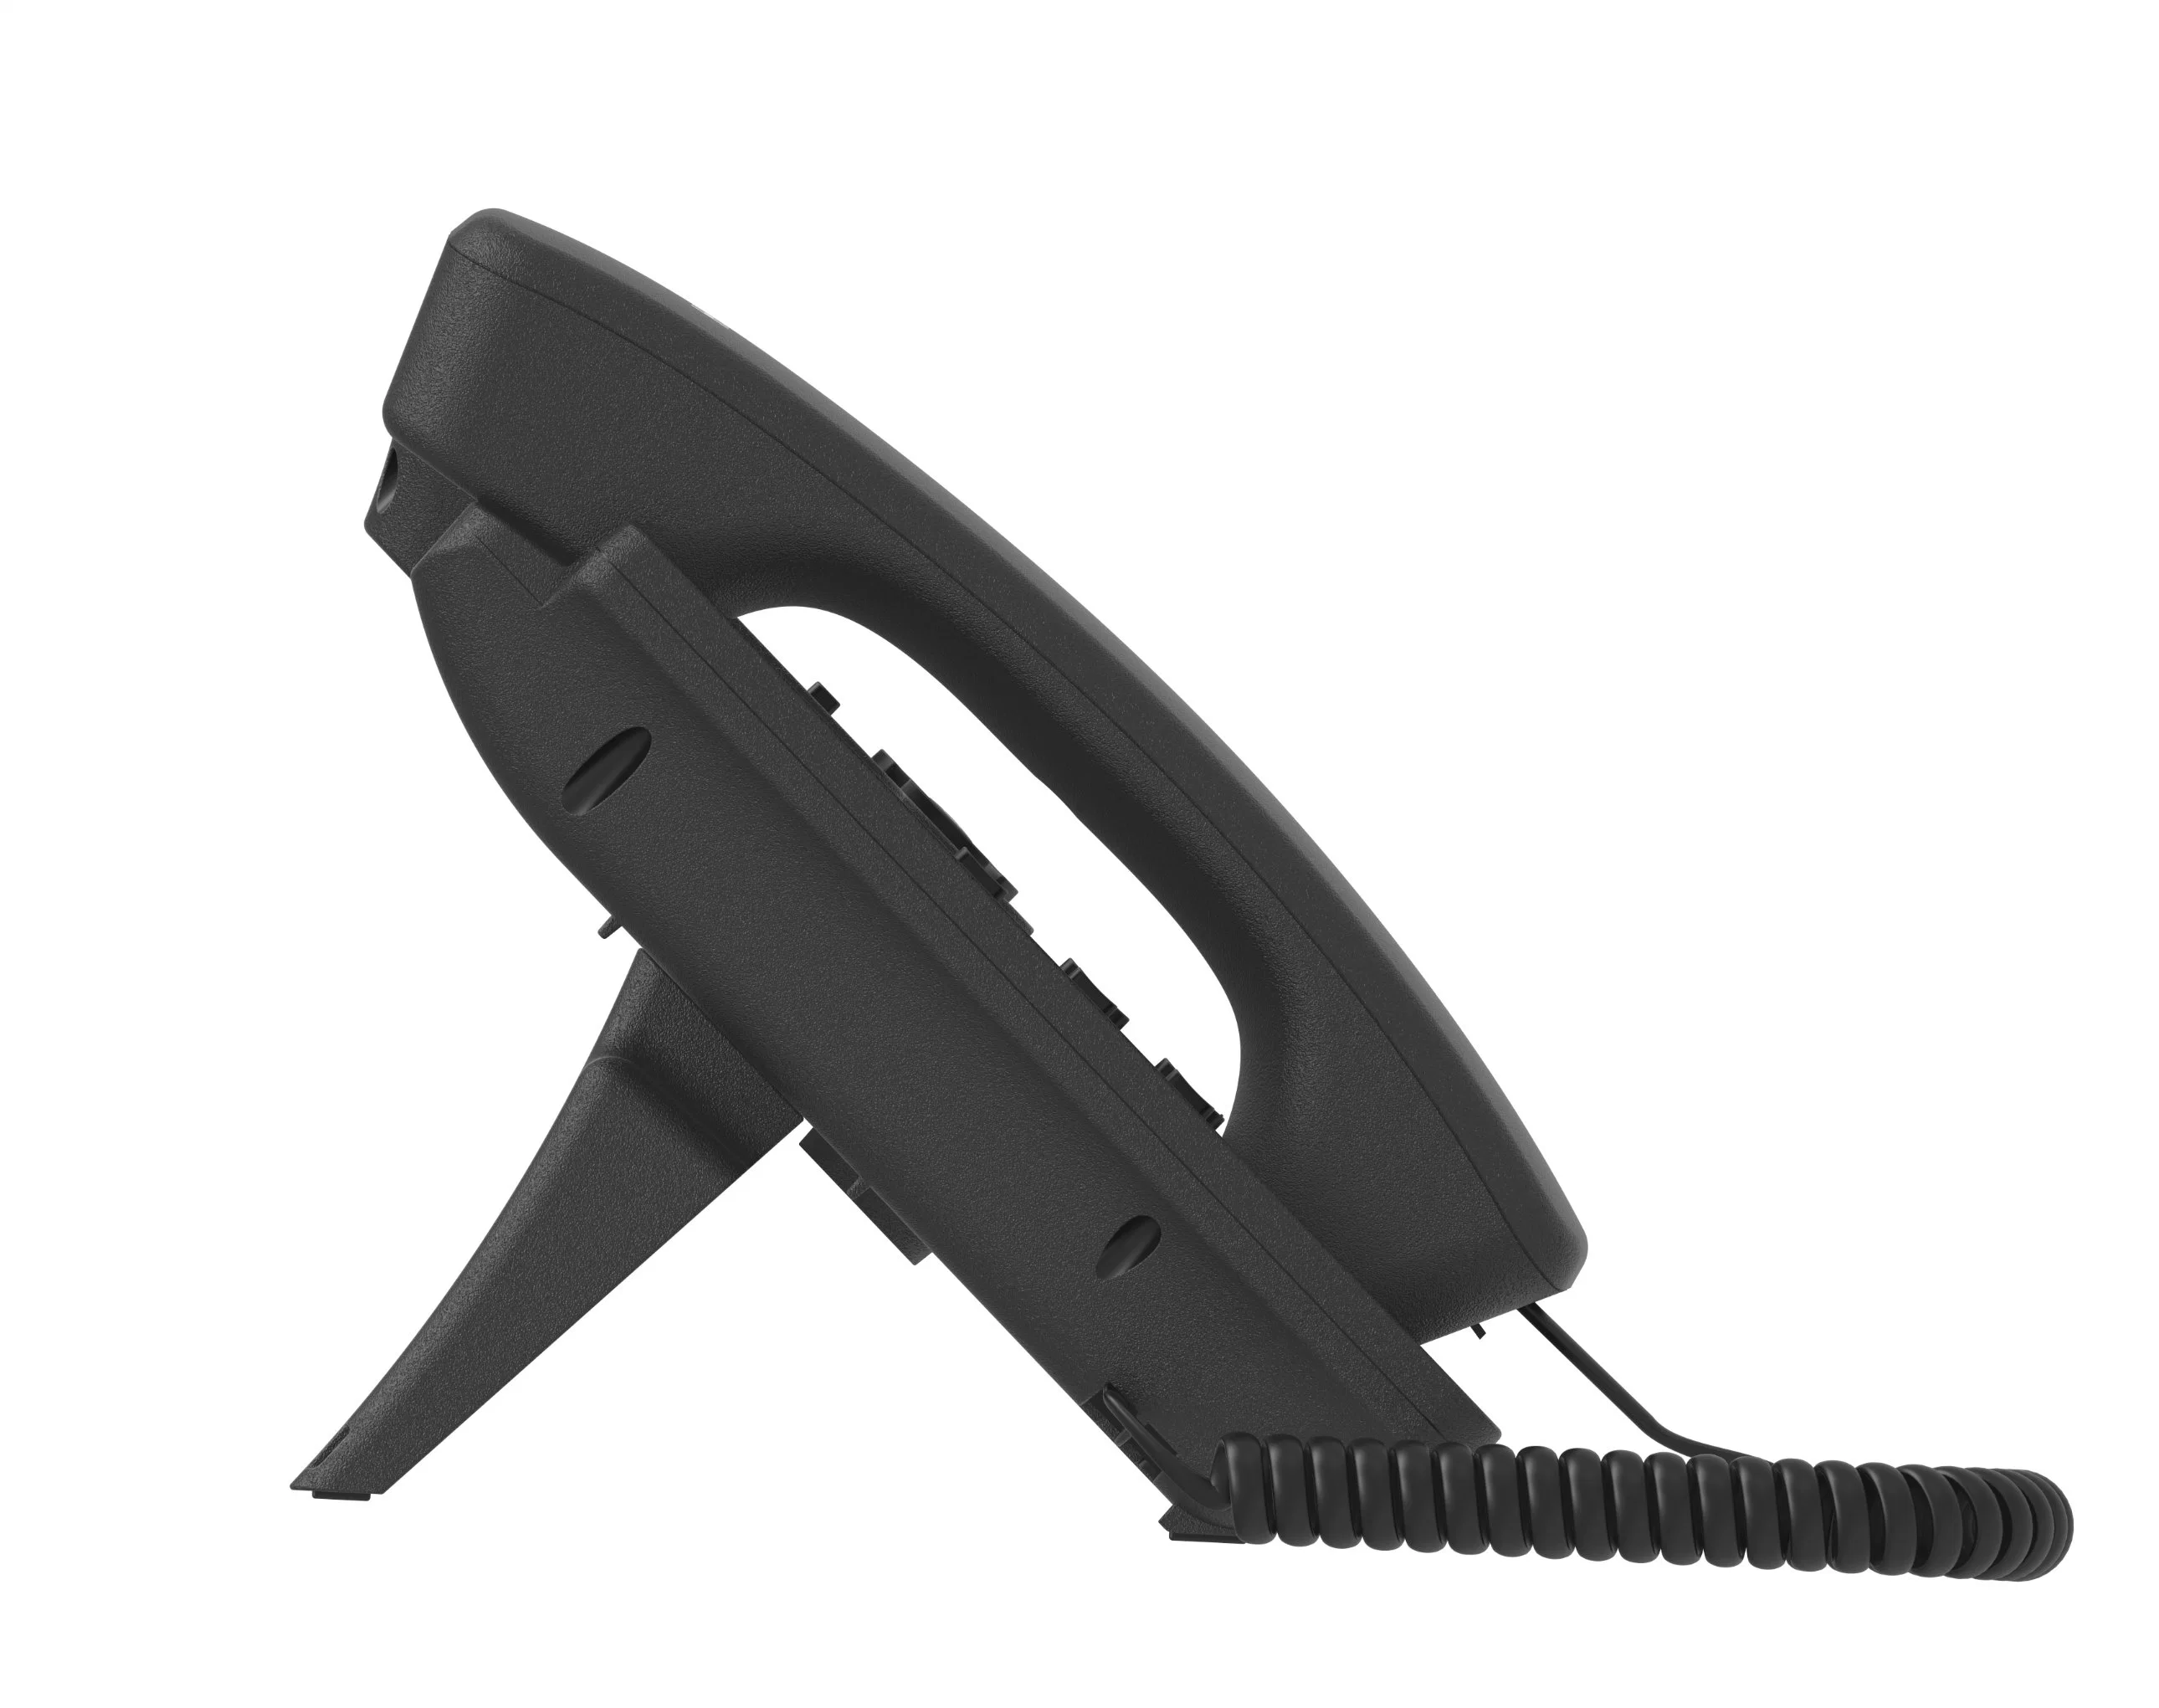 هاتف RJ45 VoIP عالي الدقة هاتف IP صوتي C62up، وهو بائع جملة